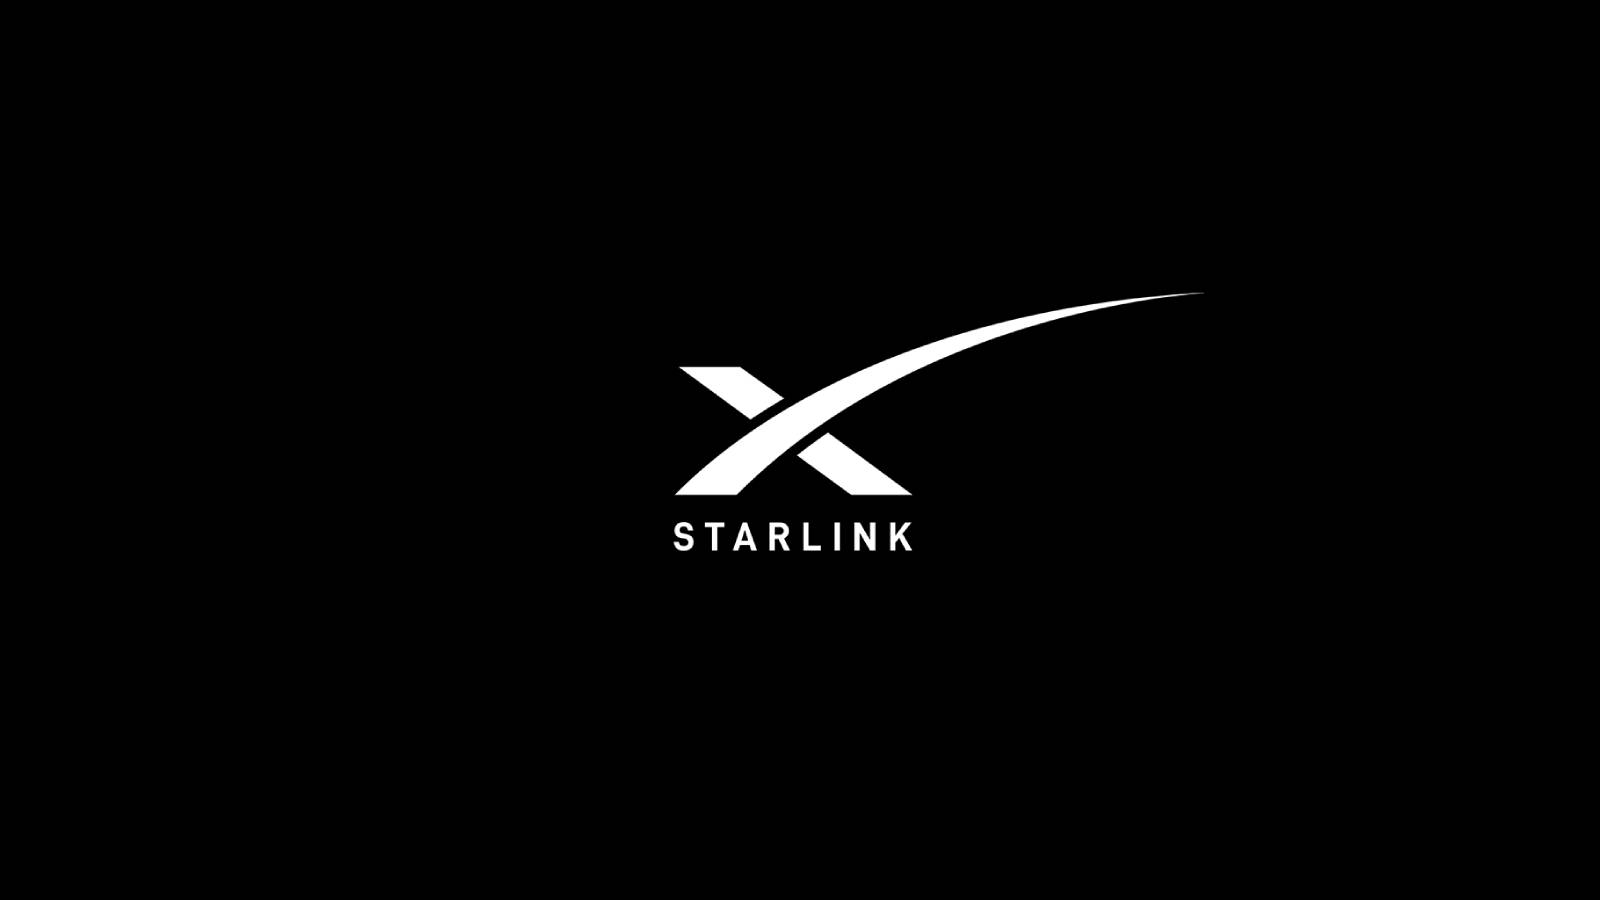 Starlink aurait conclu un partenariat pour installer une station terreste au Royaume-Uni